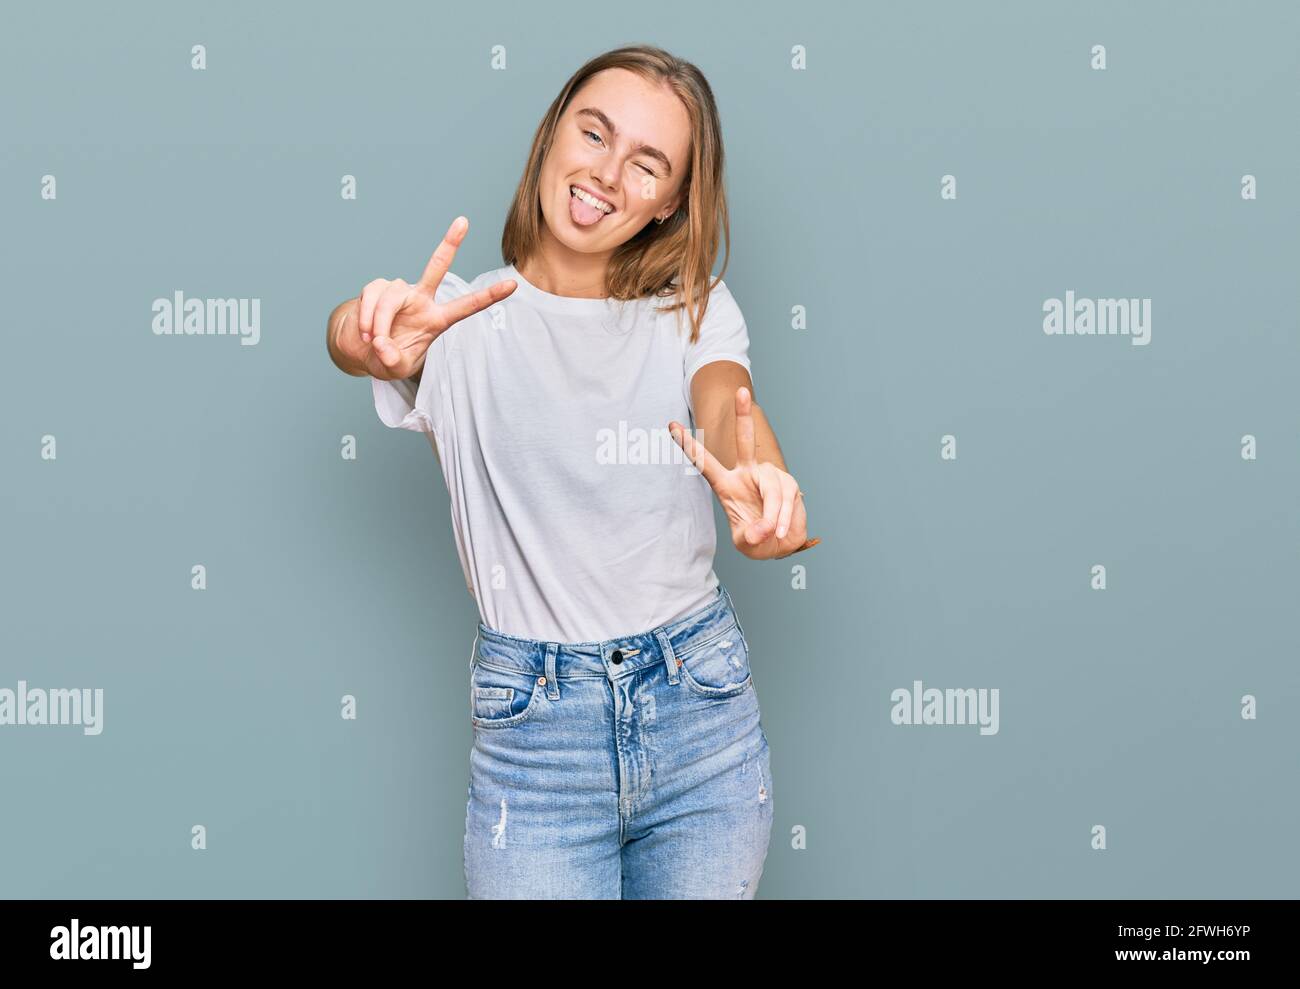 Schöne junge blonde Frau trägt beiläufige weiße T-Shirt lächelnd mit Zunge  aus zeigt Finger von beiden Händen tun Siegeszeichen. Nummer zwei  Stockfotografie - Alamy